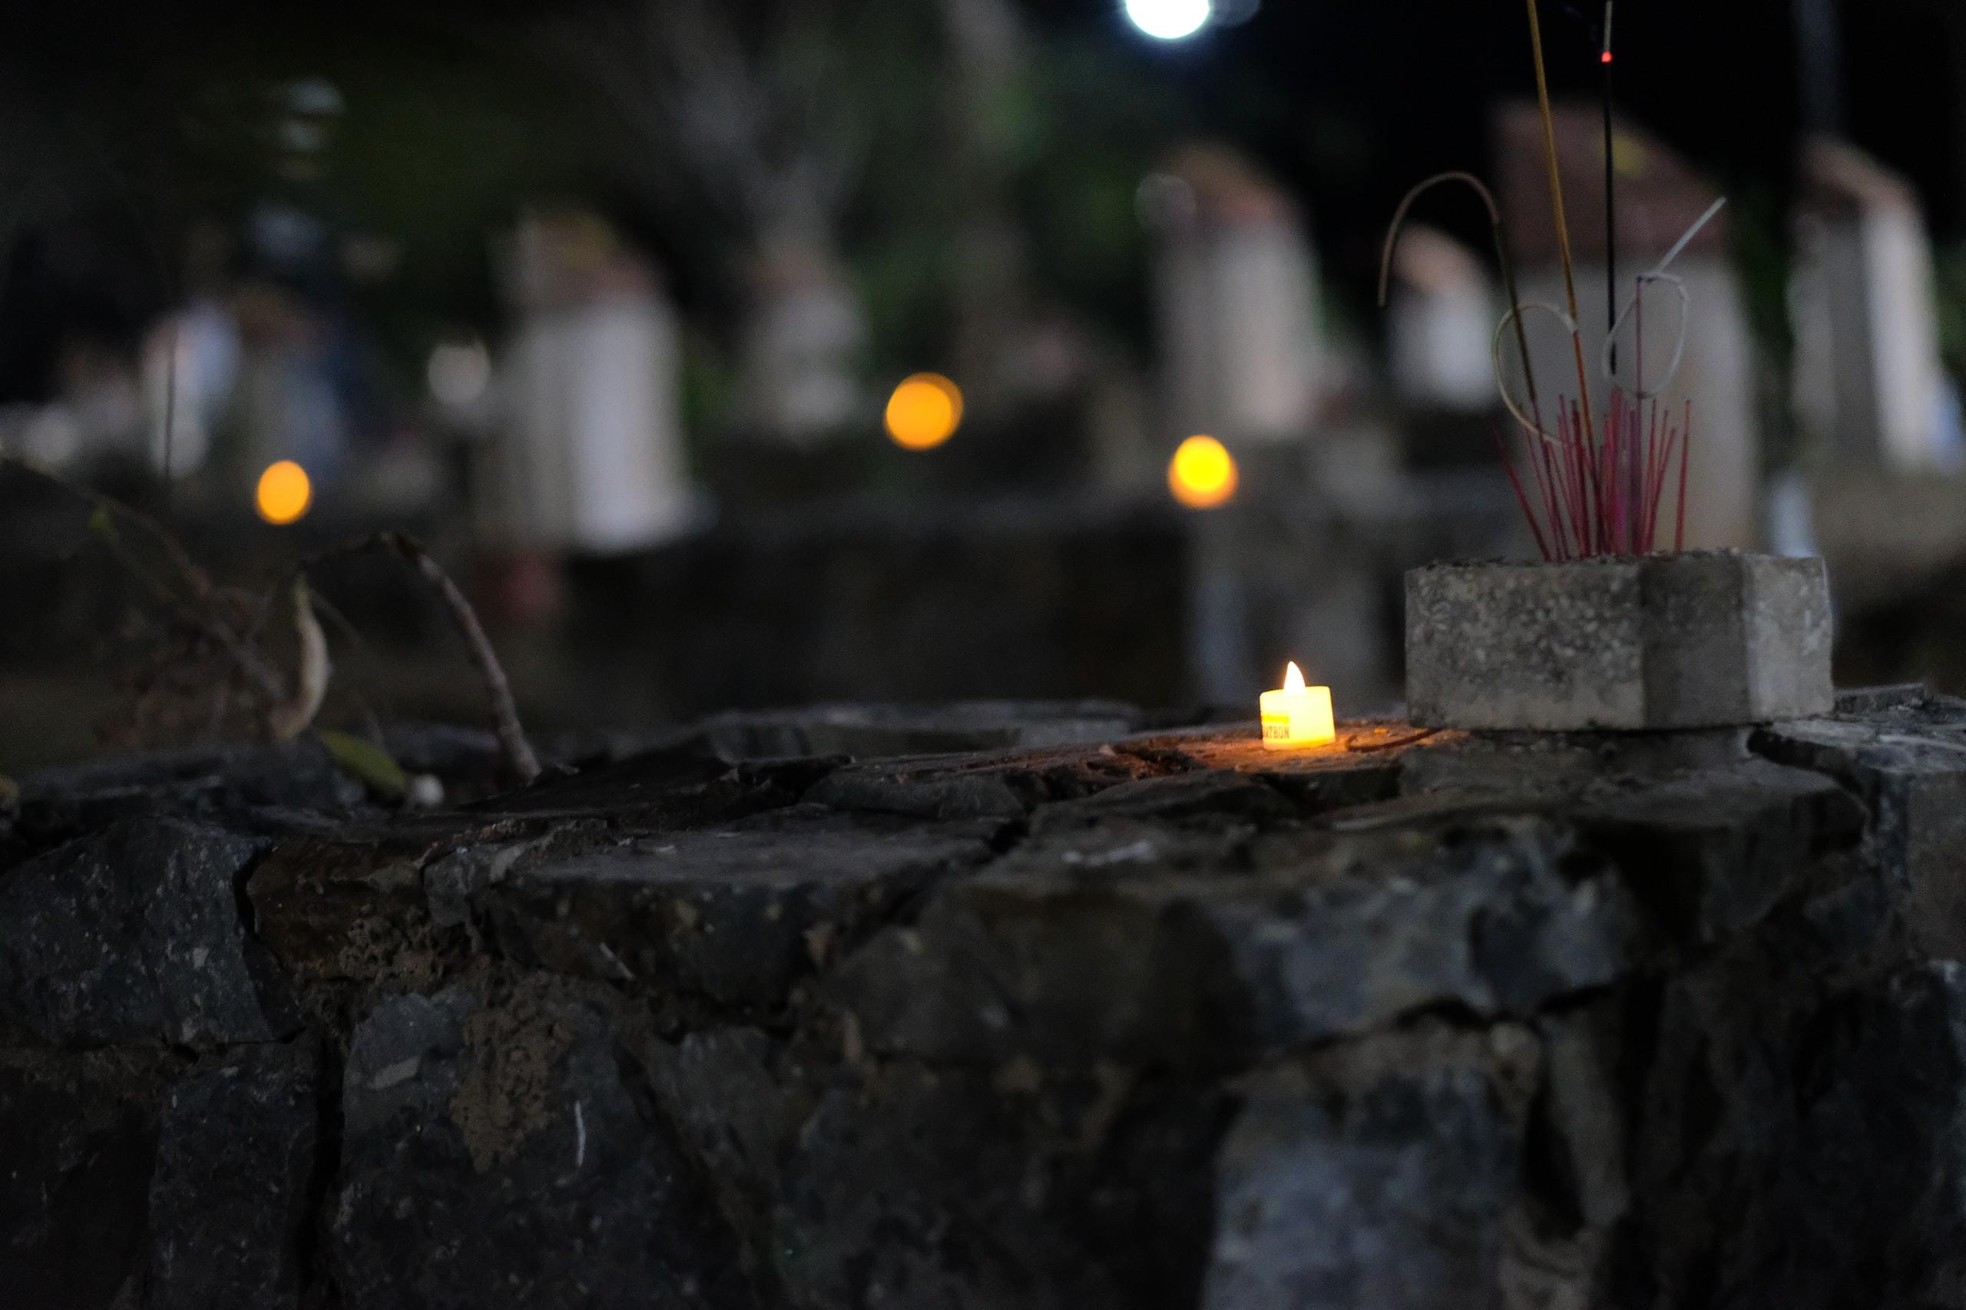 Xúc động hình ảnh những ngọn nến trong đêm ở Nghĩa trang Hàng Dương ảnh 4